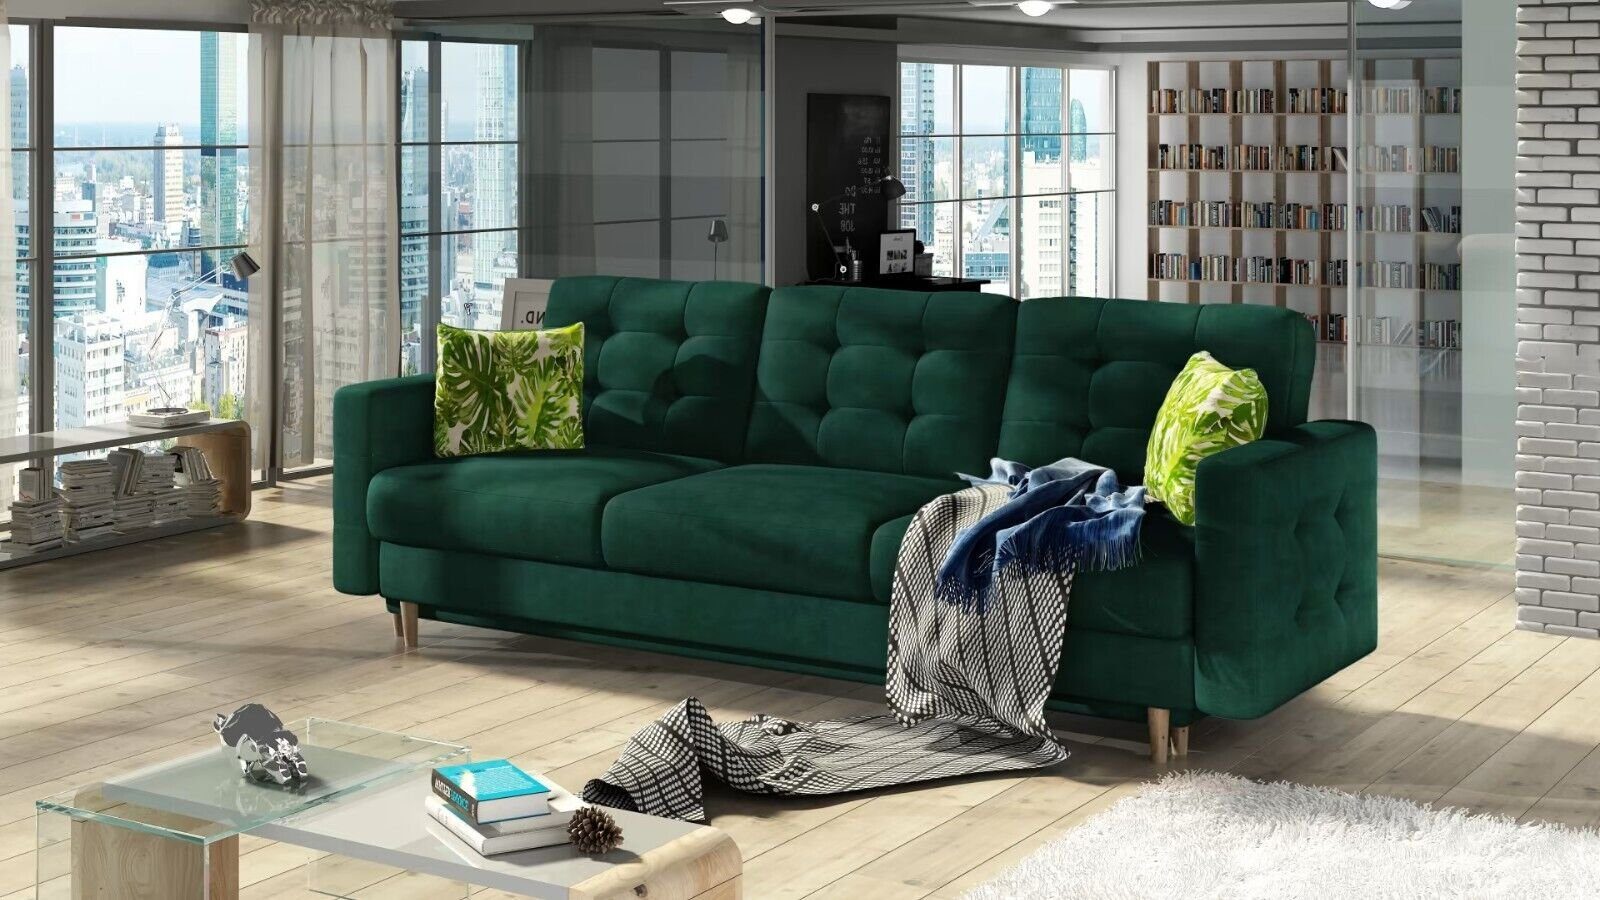 JVmoebel Sofa Dreisitzer Wohnzimmer Couch Polster 3 Sitzer 100% Textil Couch Sofort, Made in Europe | Alle Sofas